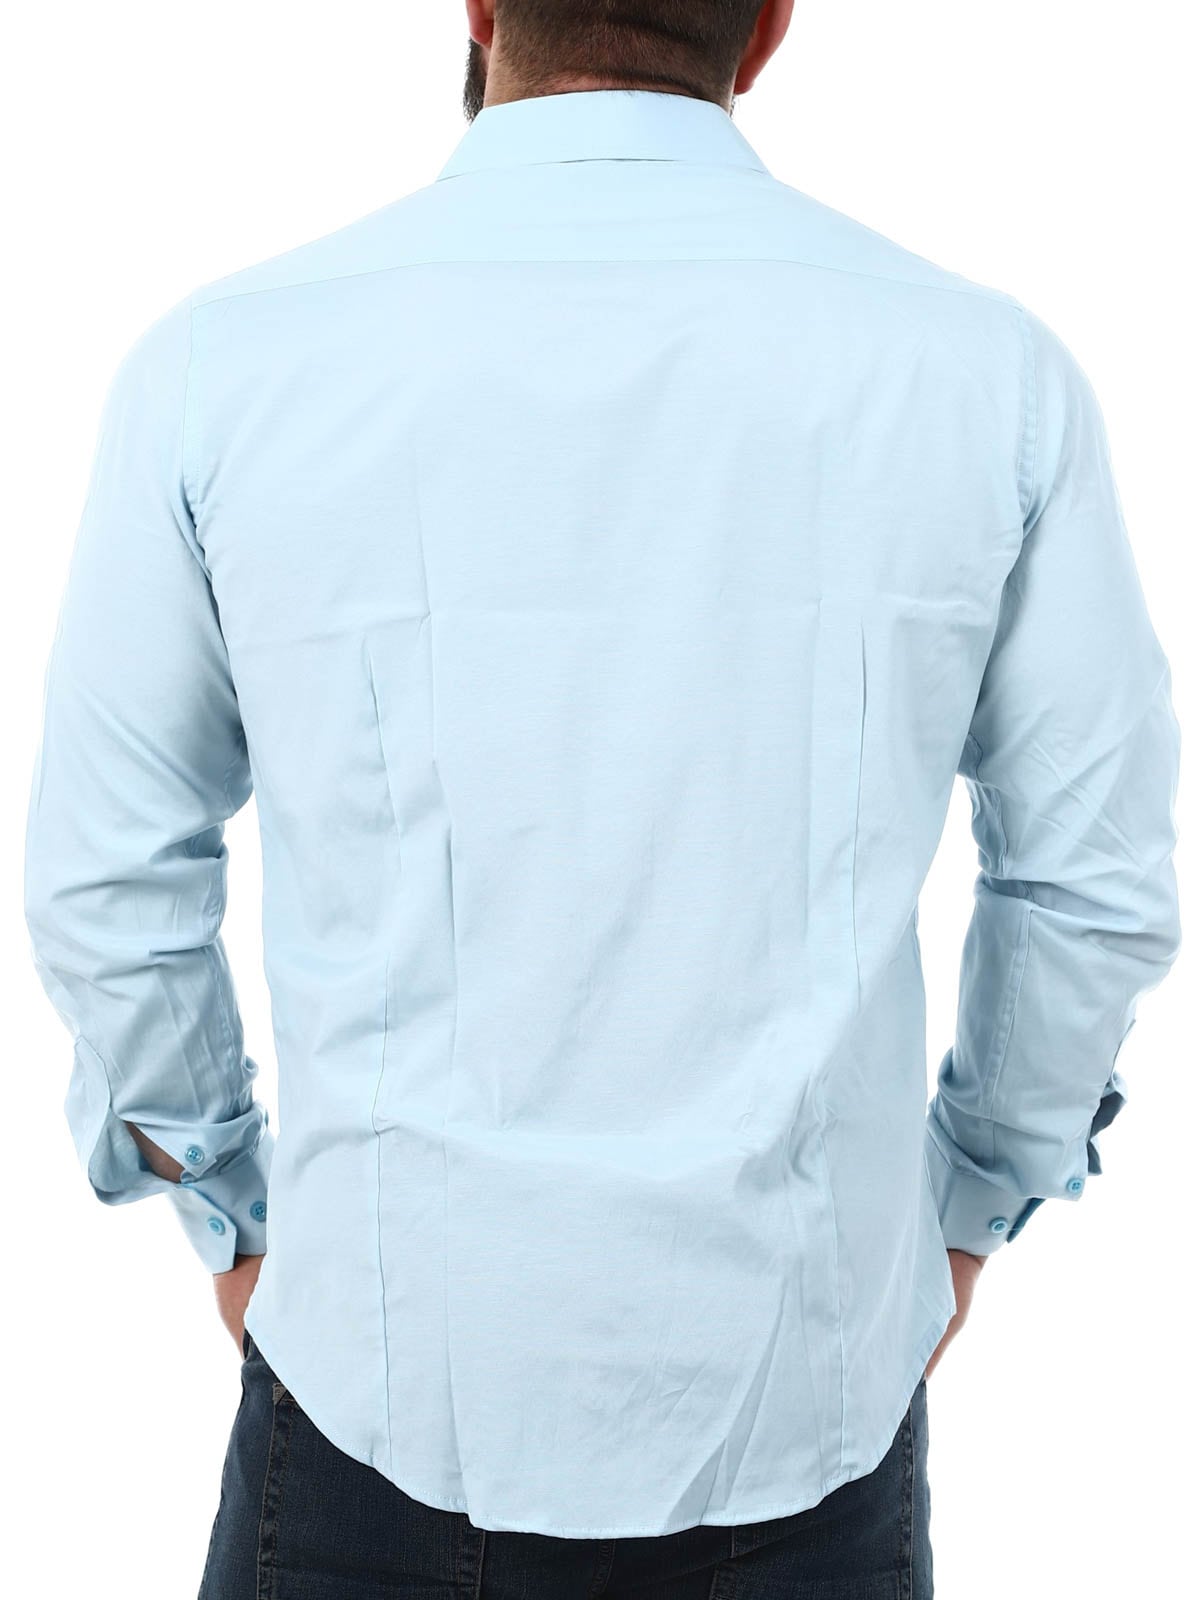 CASSIAN RUSTY NEAL Shirt Light Blue_6.jpg